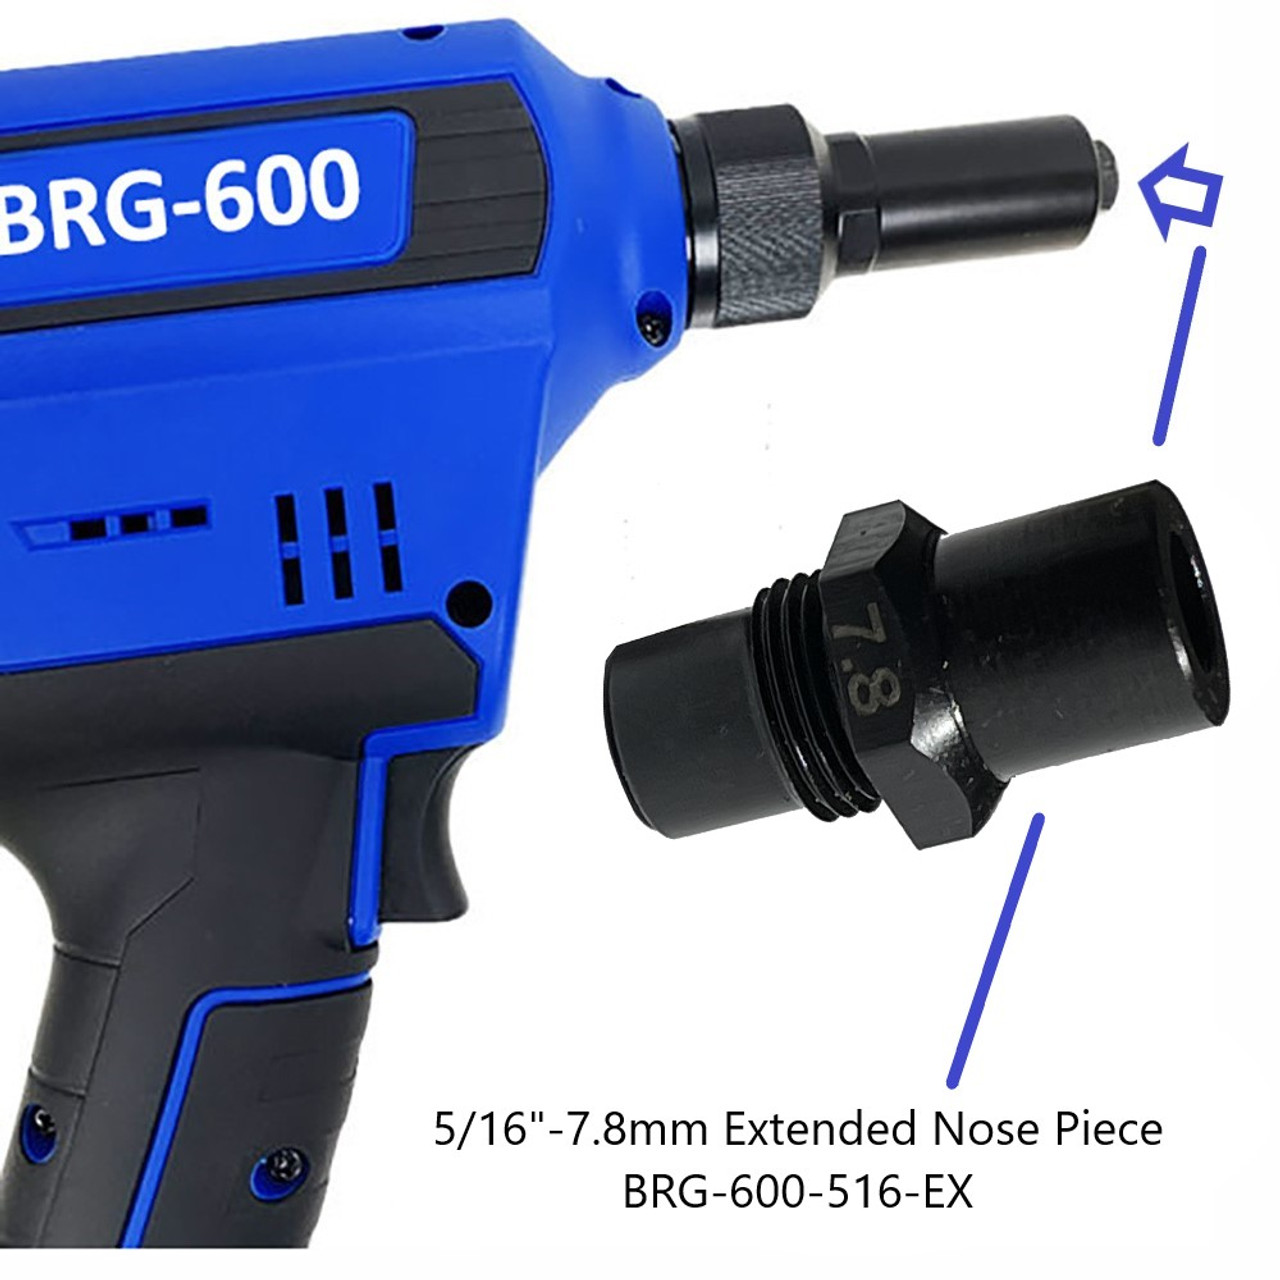 Nose Piece  Extended  5/16 -7.8mm - for BRG-600 Blind Rivet Gun HH